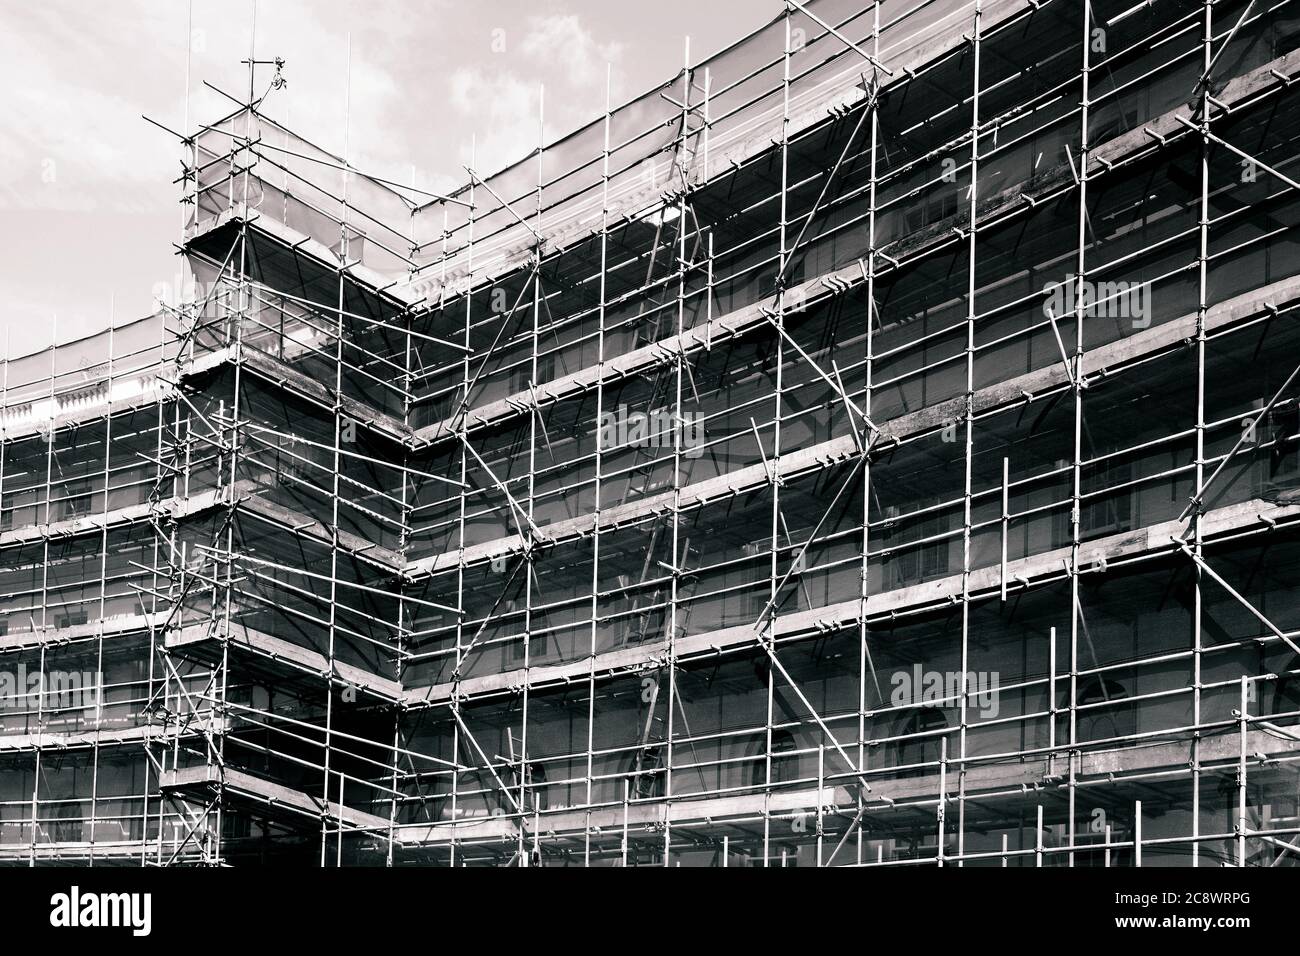 Telaio per impalcature in un cantiere edile in bianco e nero foto di immagini monocromatiche Foto Stock